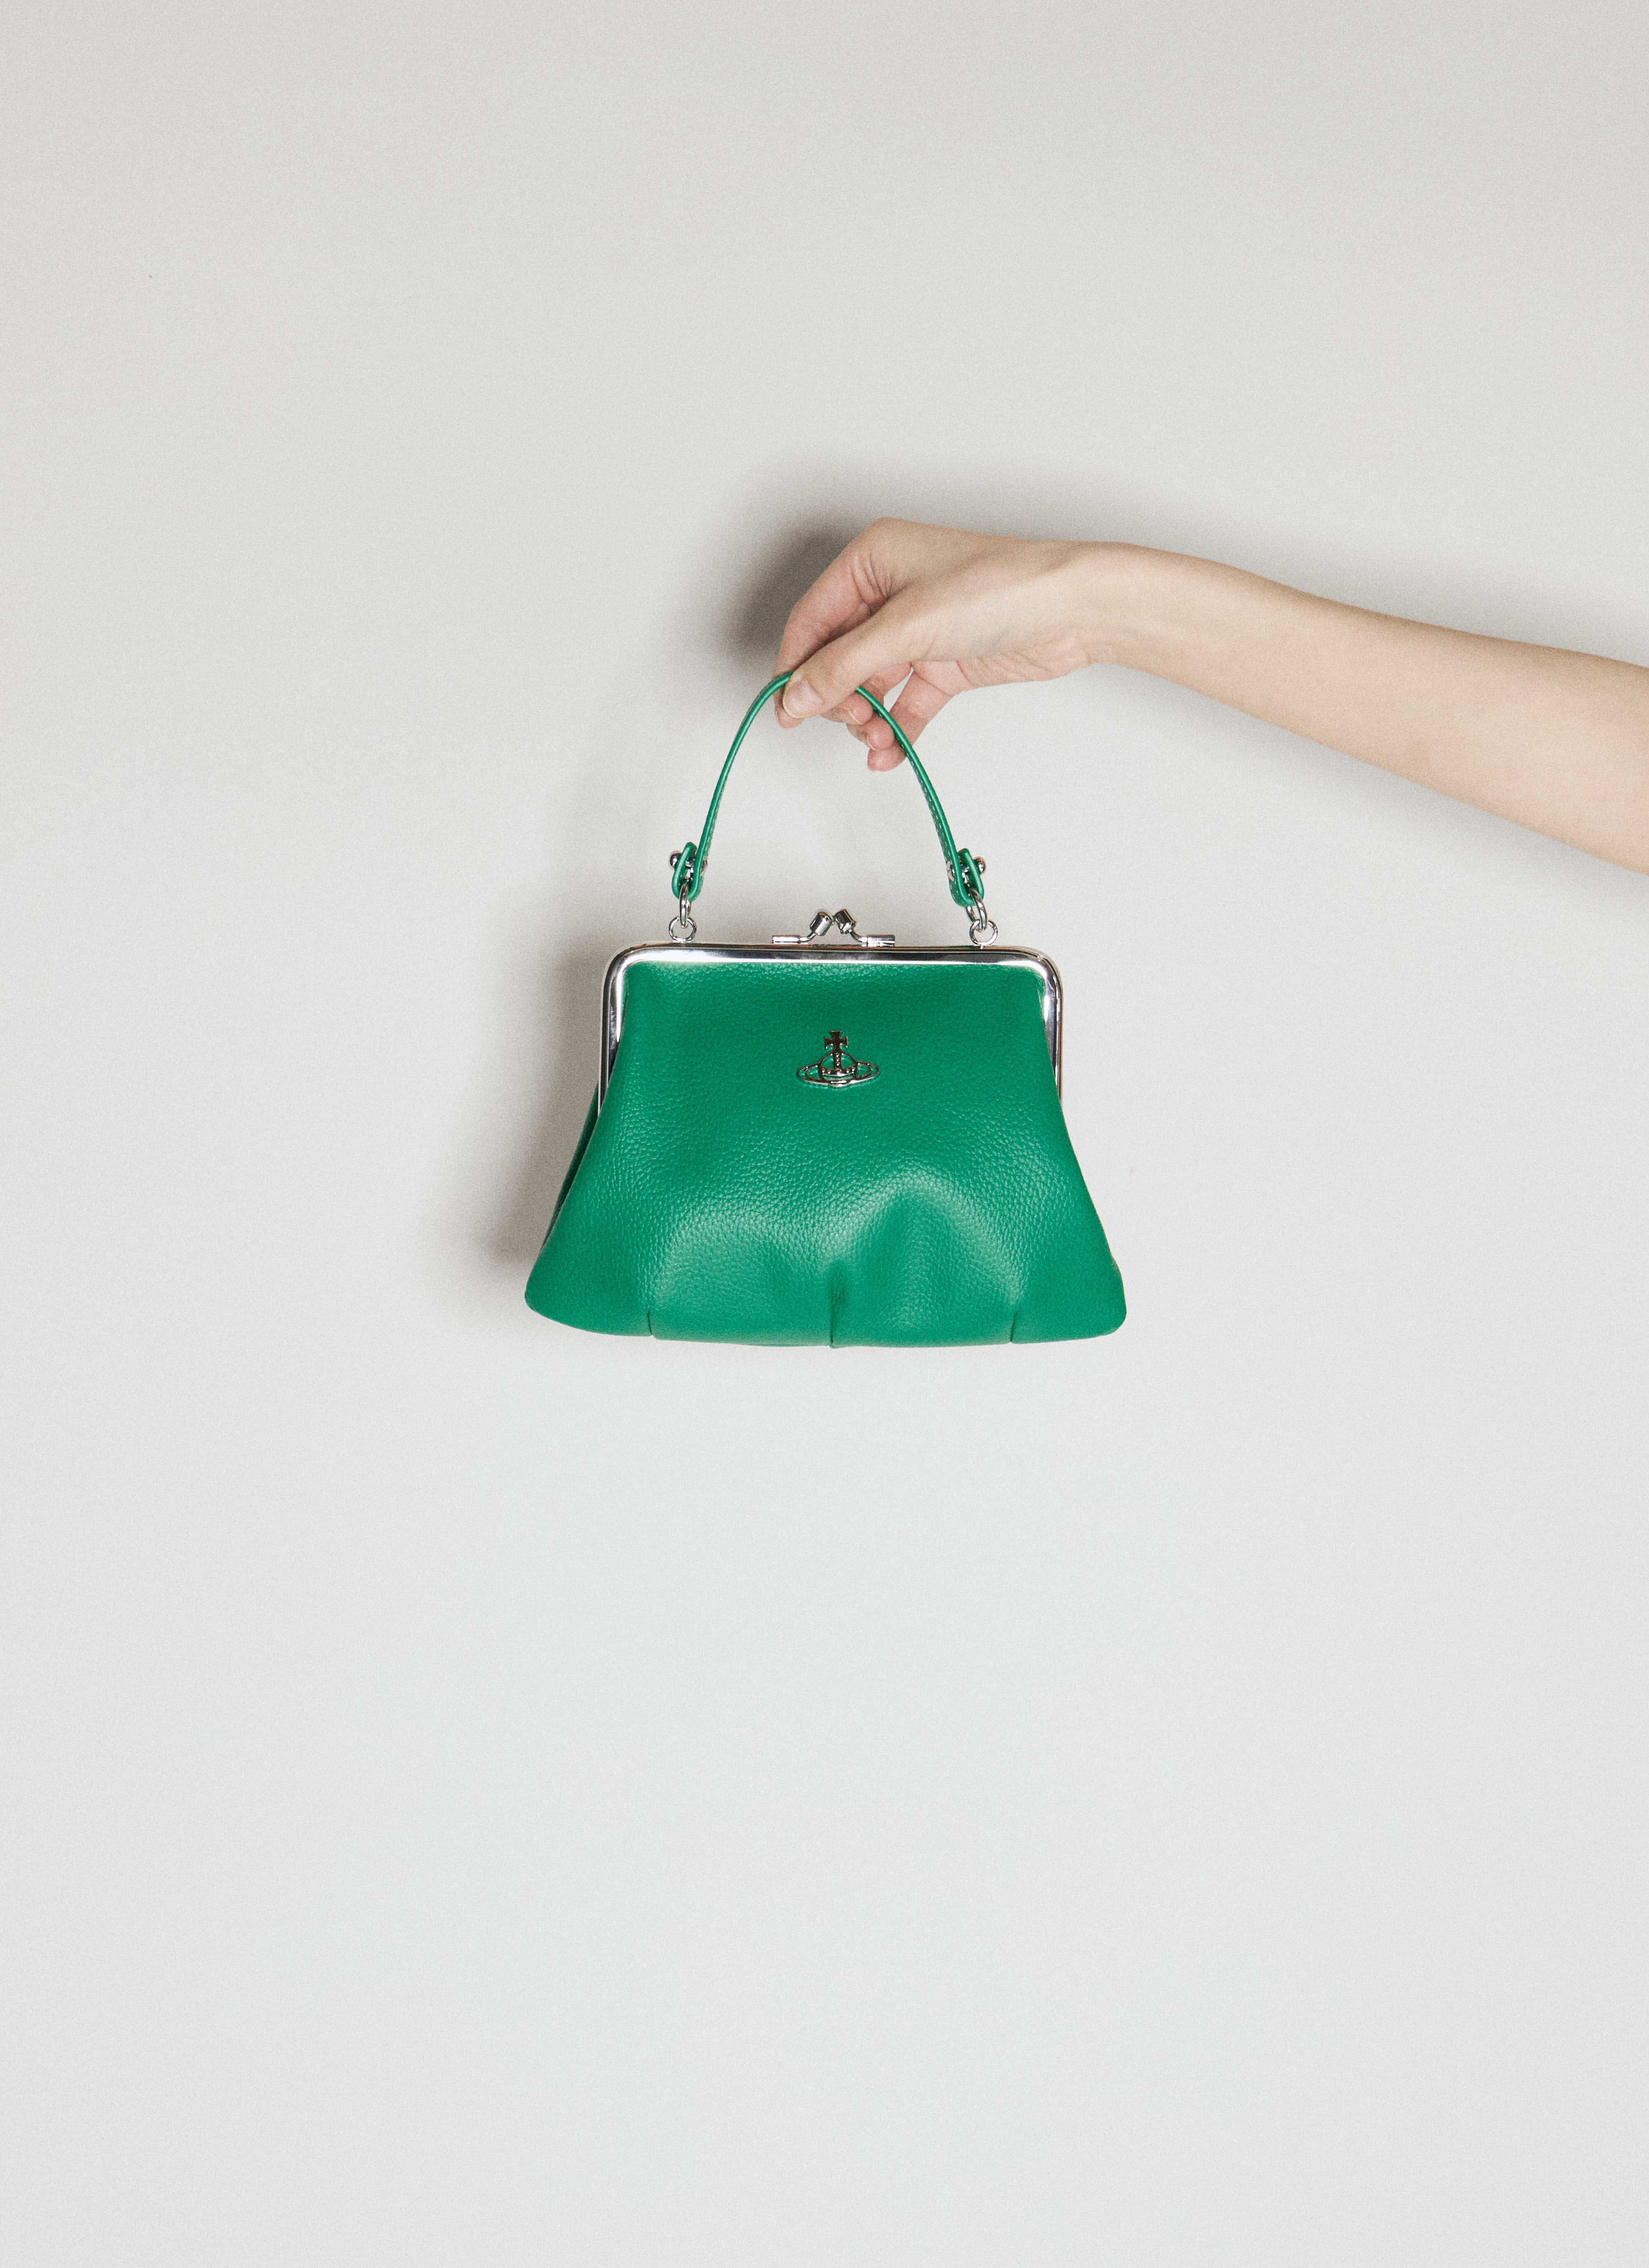 Miu Miu Granny Frame Handbag Green miu0256033